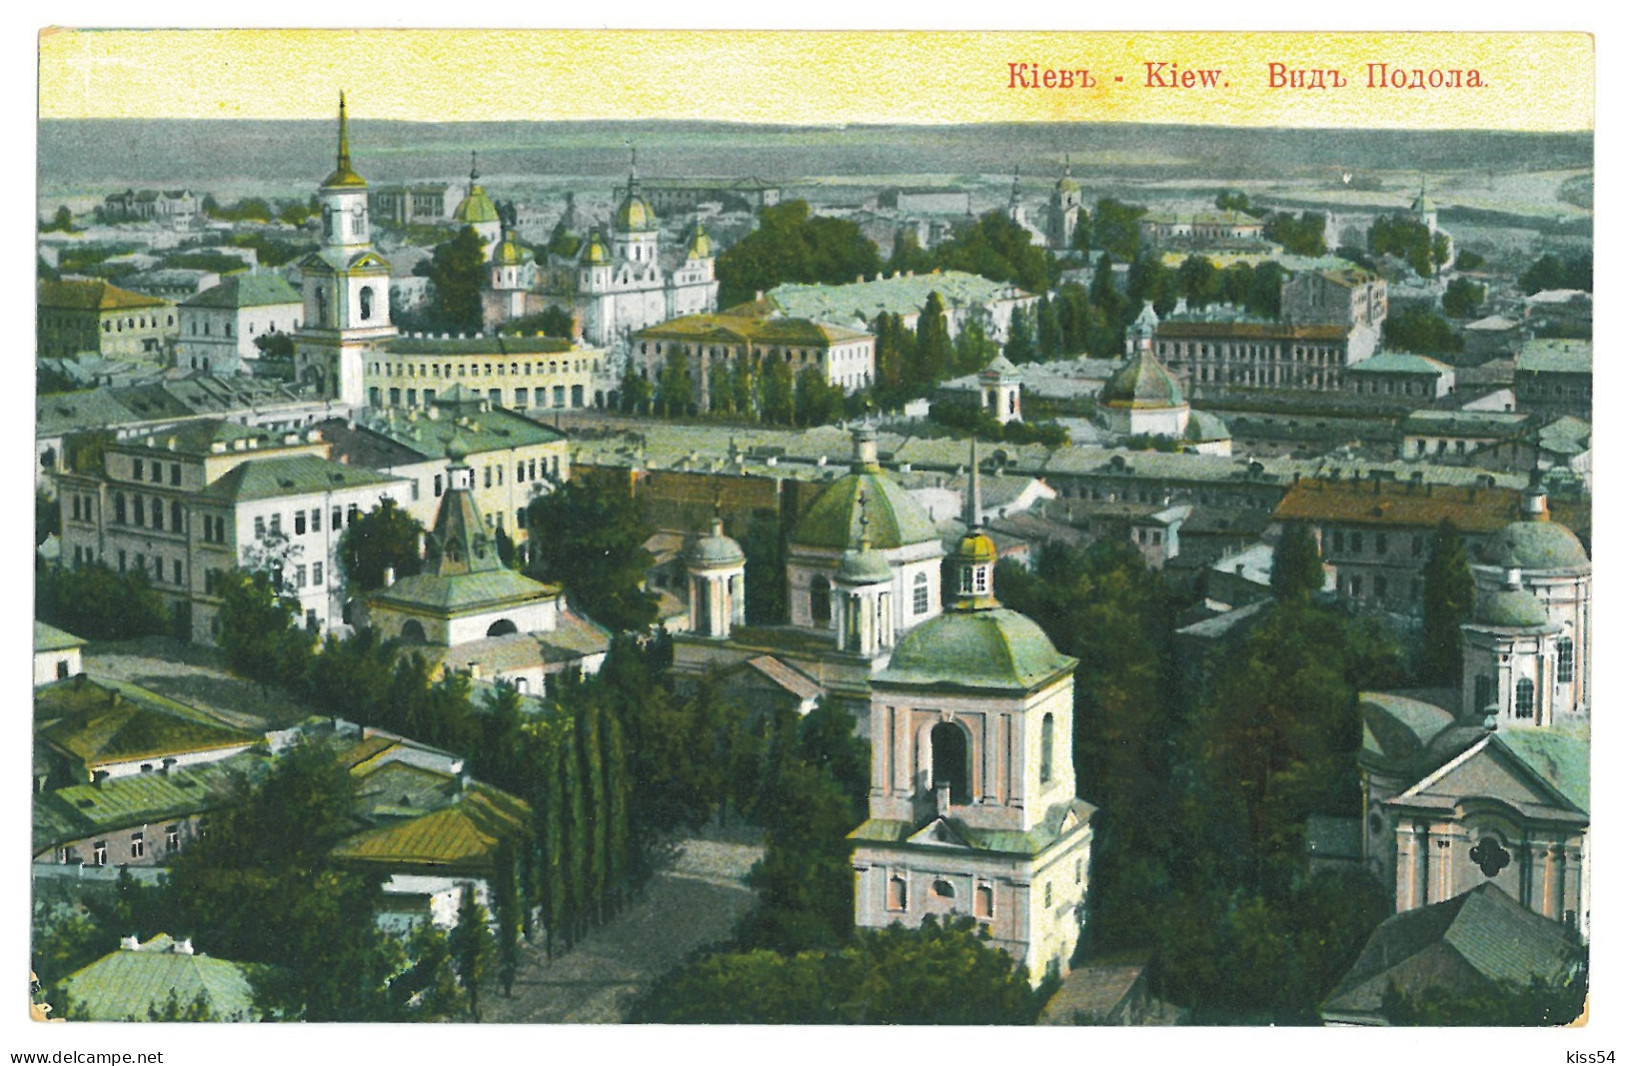 UK 68 - 23308 KIEV, Panorama, Ukraine - Old Postcard - Used - Ukraine